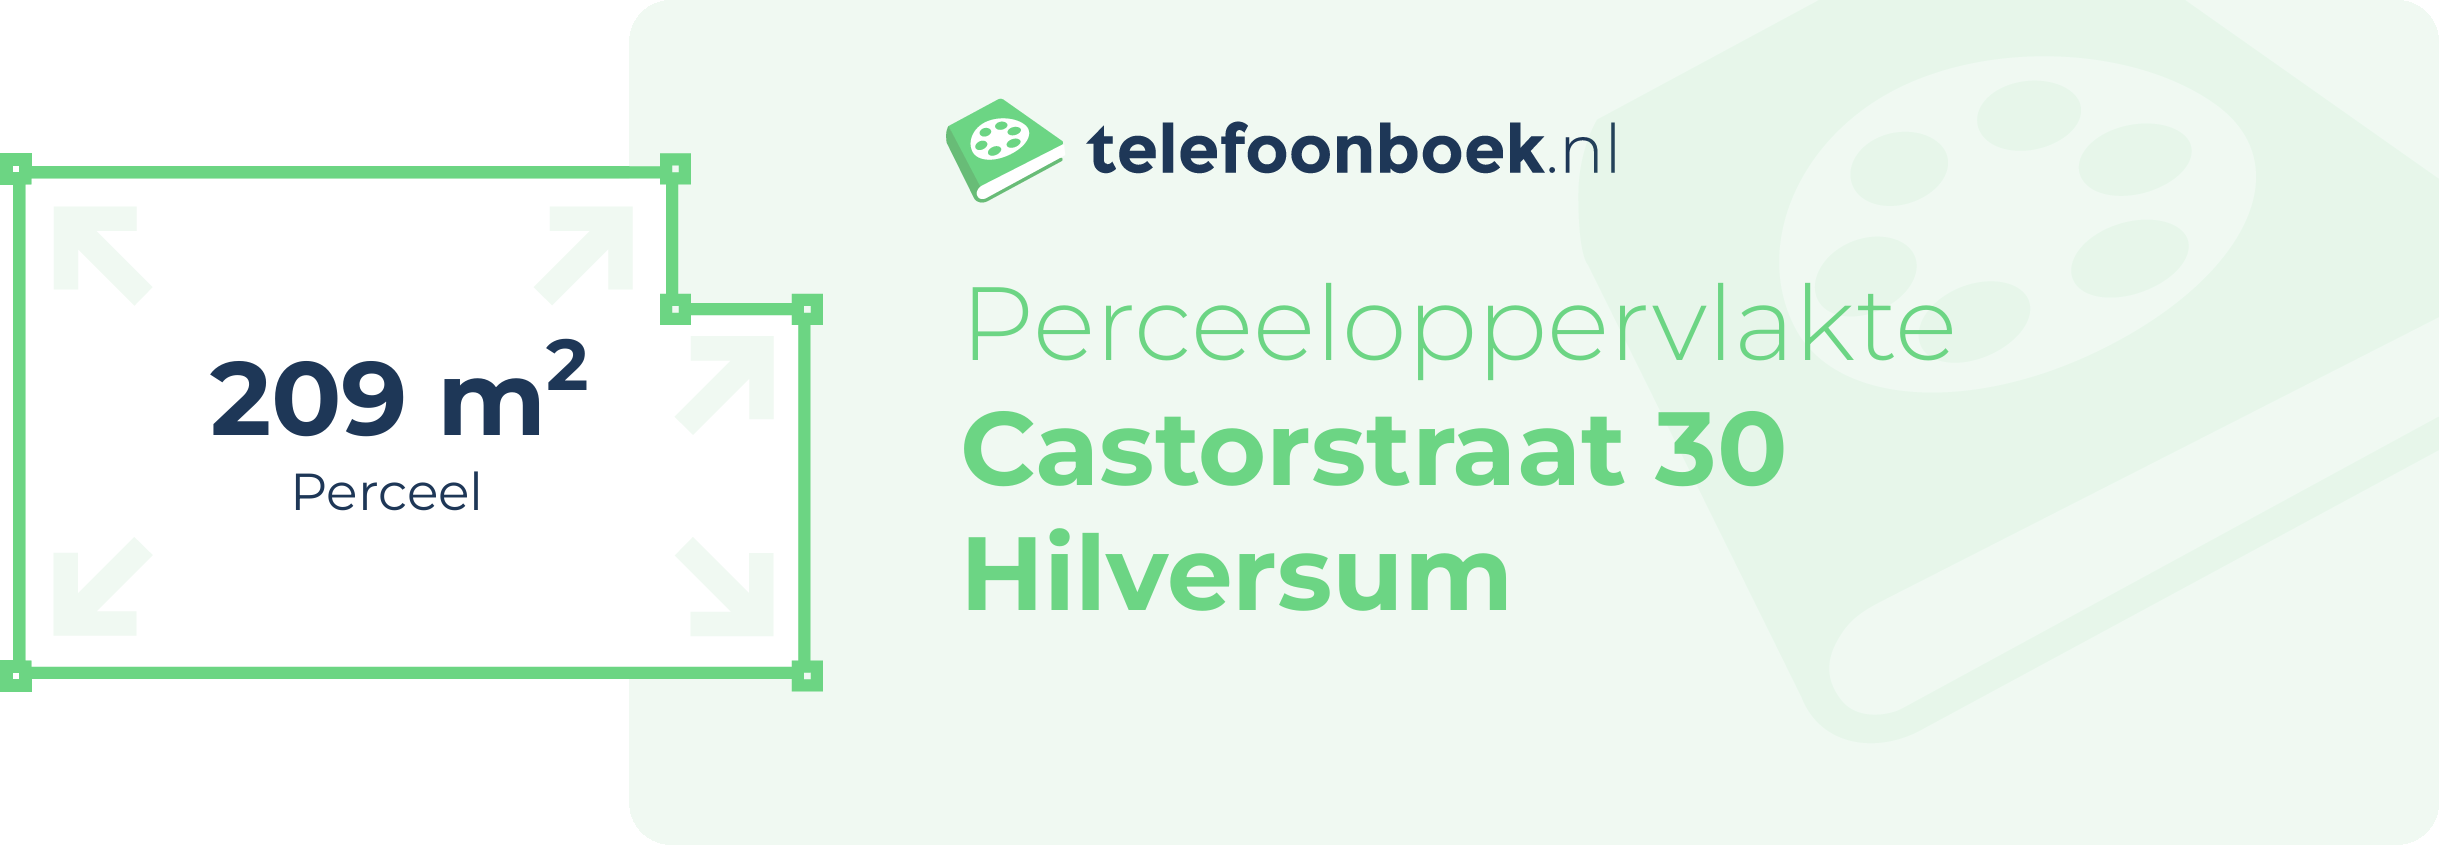 Perceeloppervlakte Castorstraat 30 Hilversum